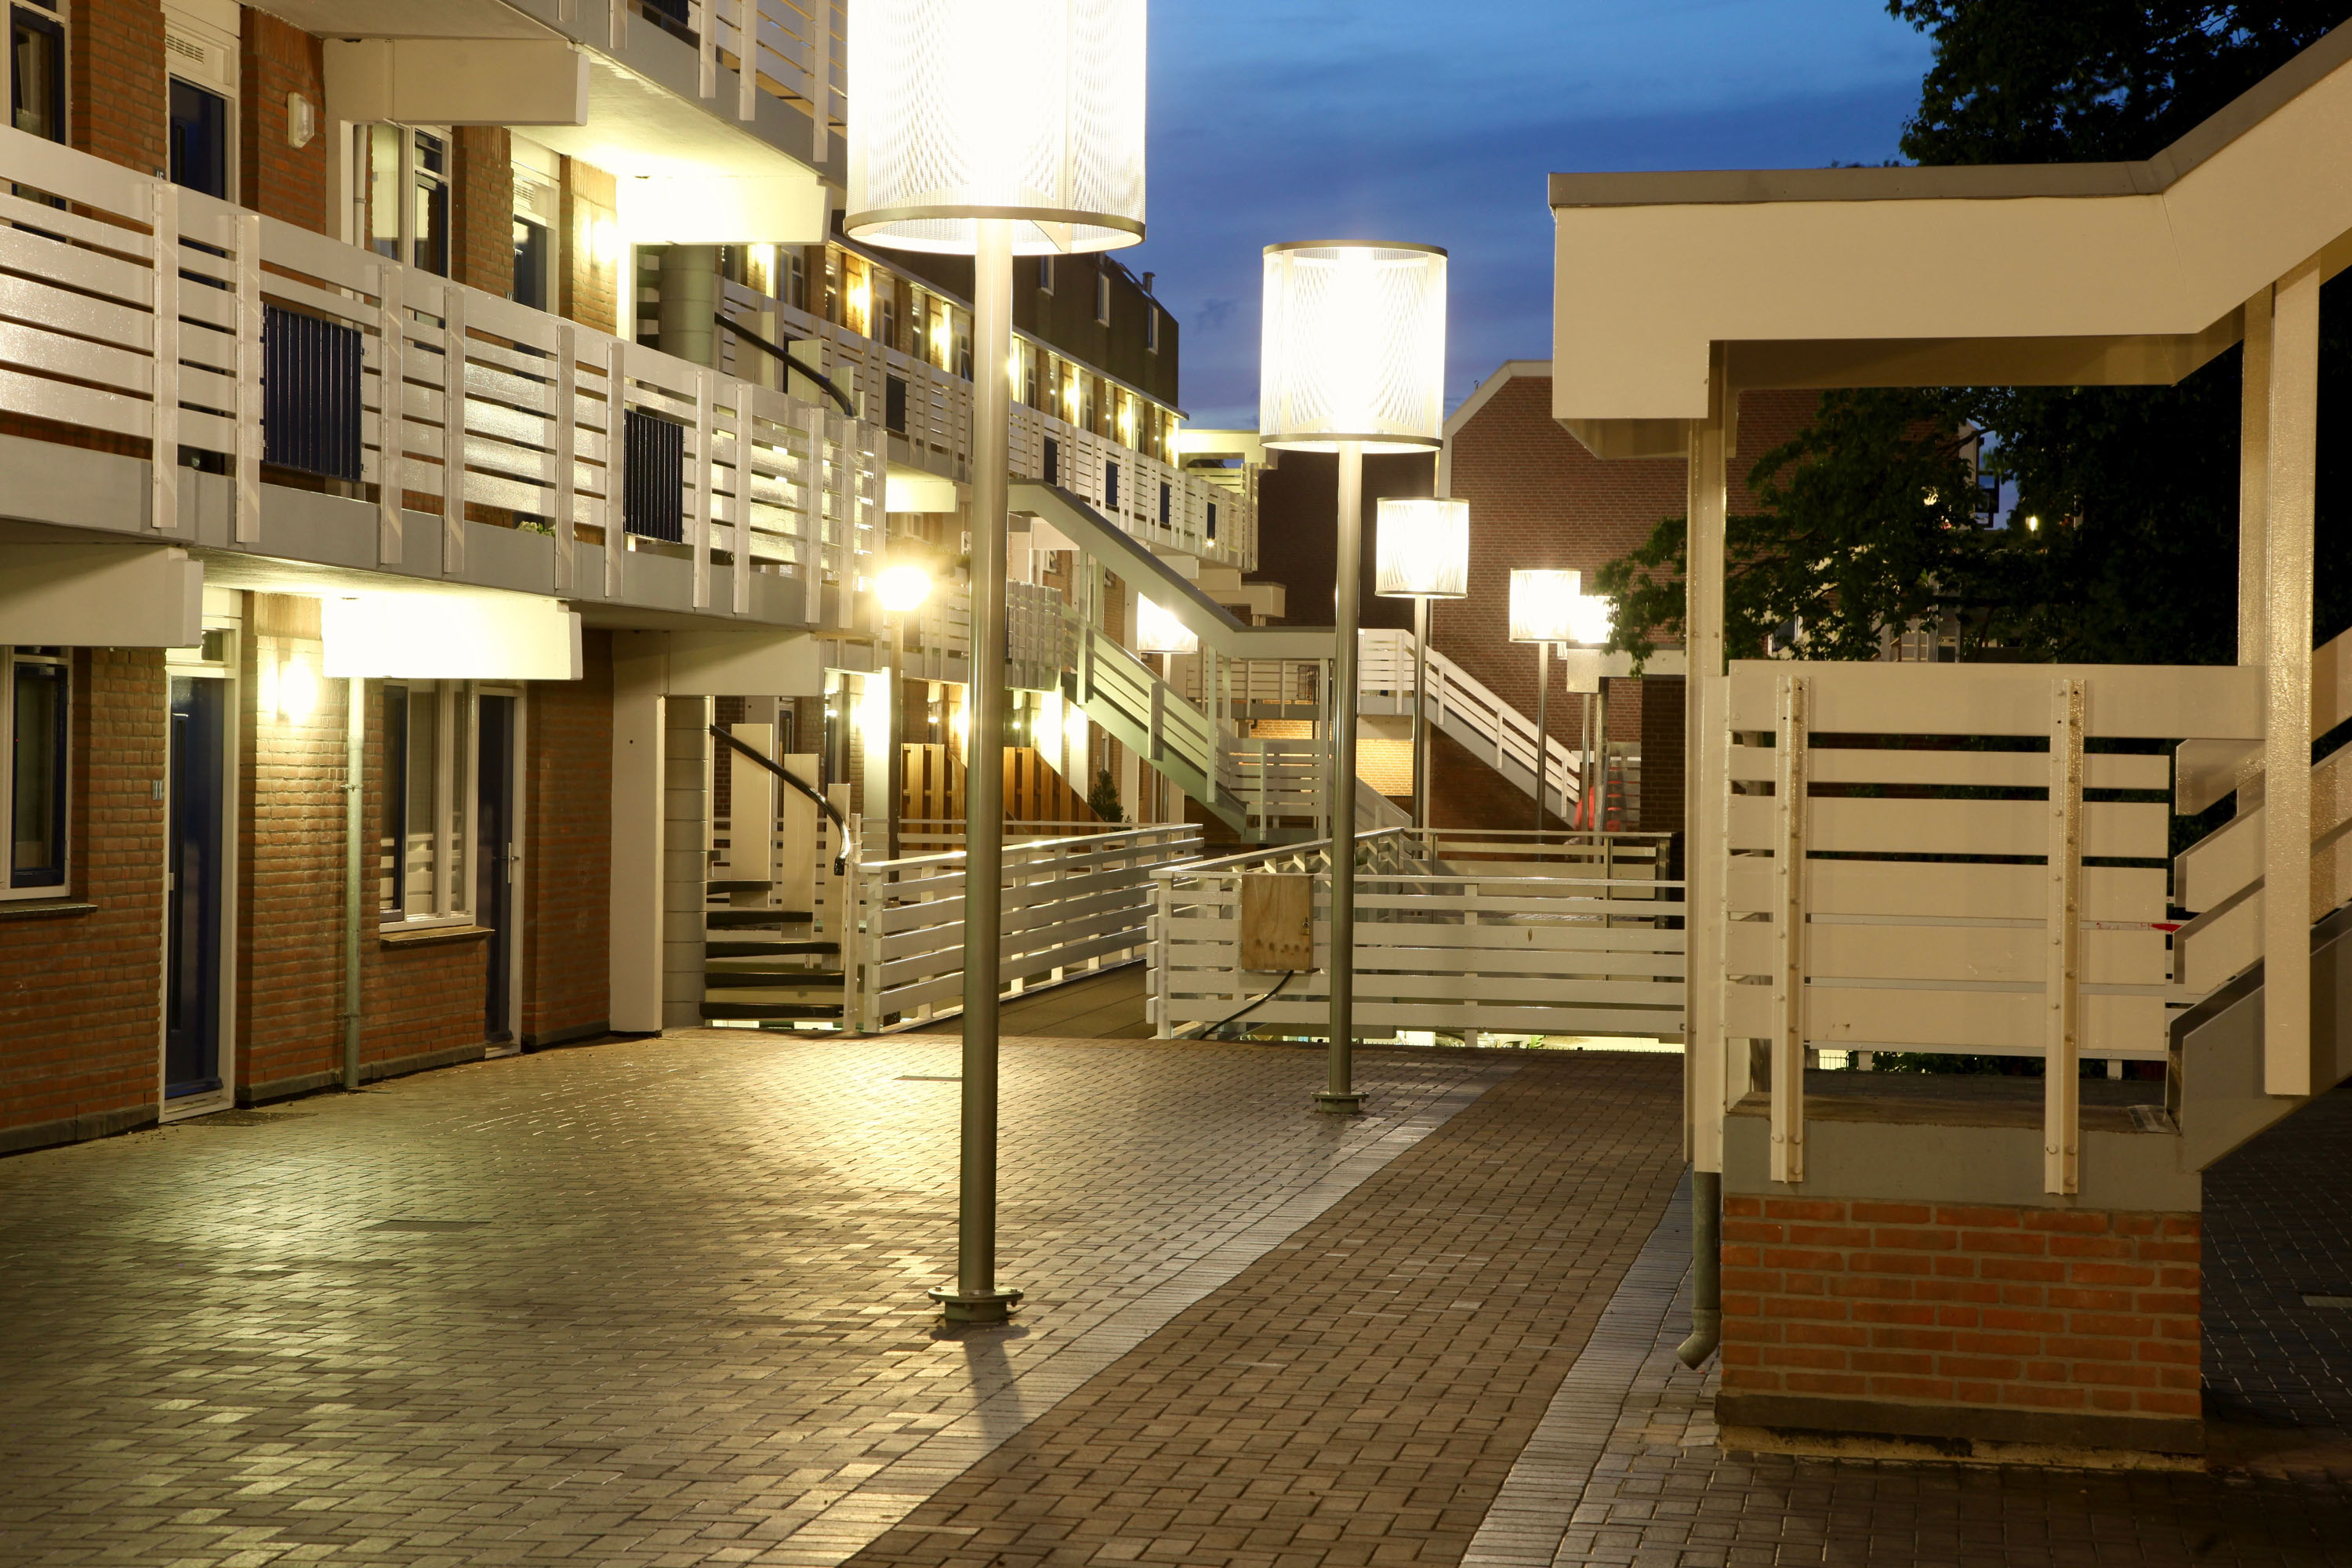 luminaires Modernista, lighting in residential area